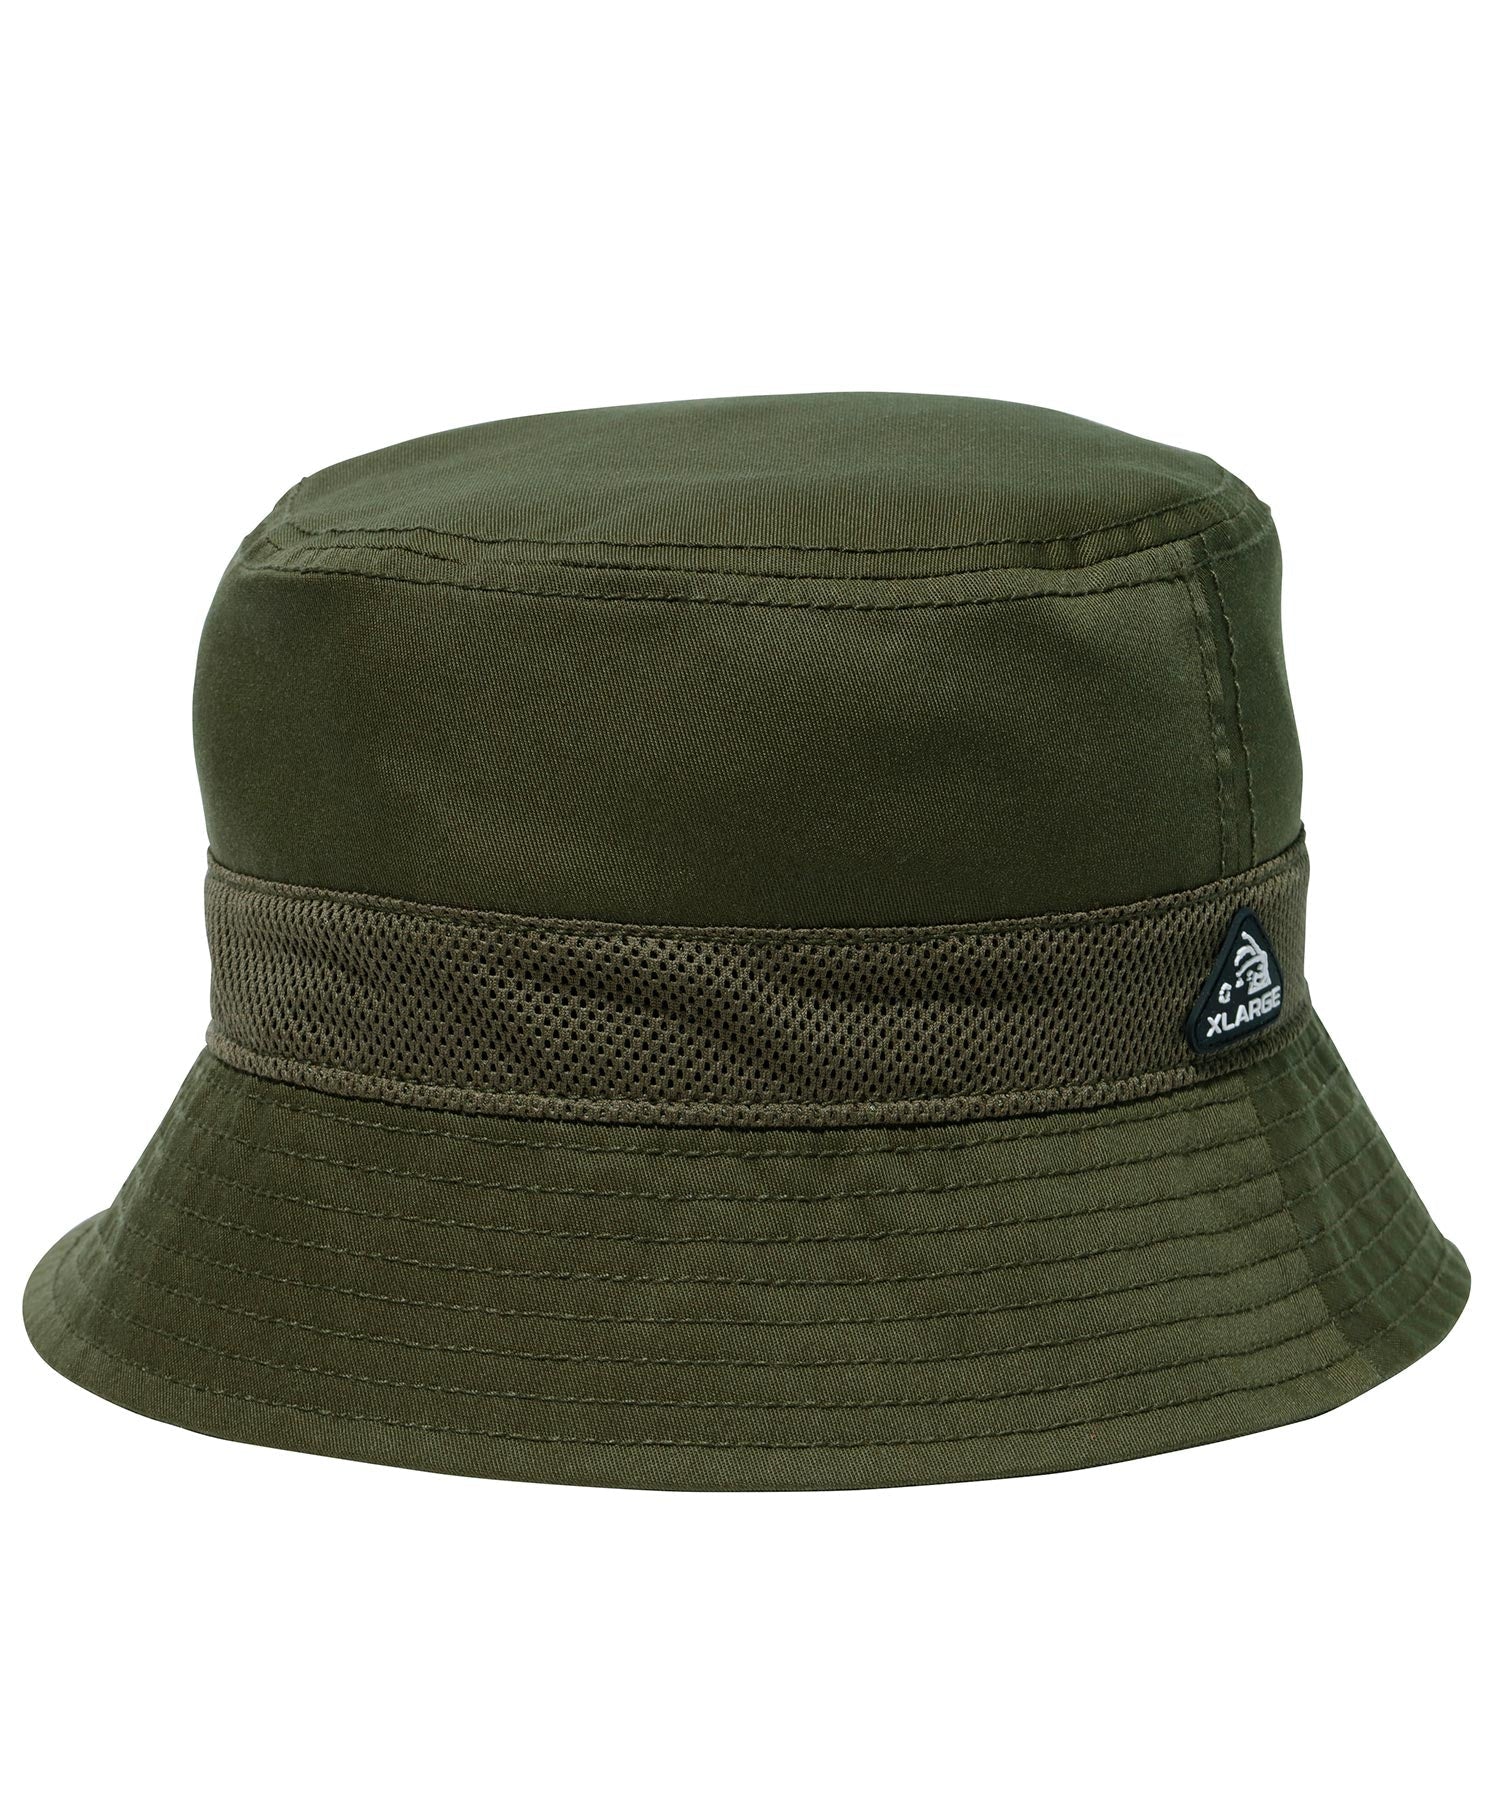 หมวกบักเก็ต XLARGE รุ่น Mesh Panel Bucket Hat